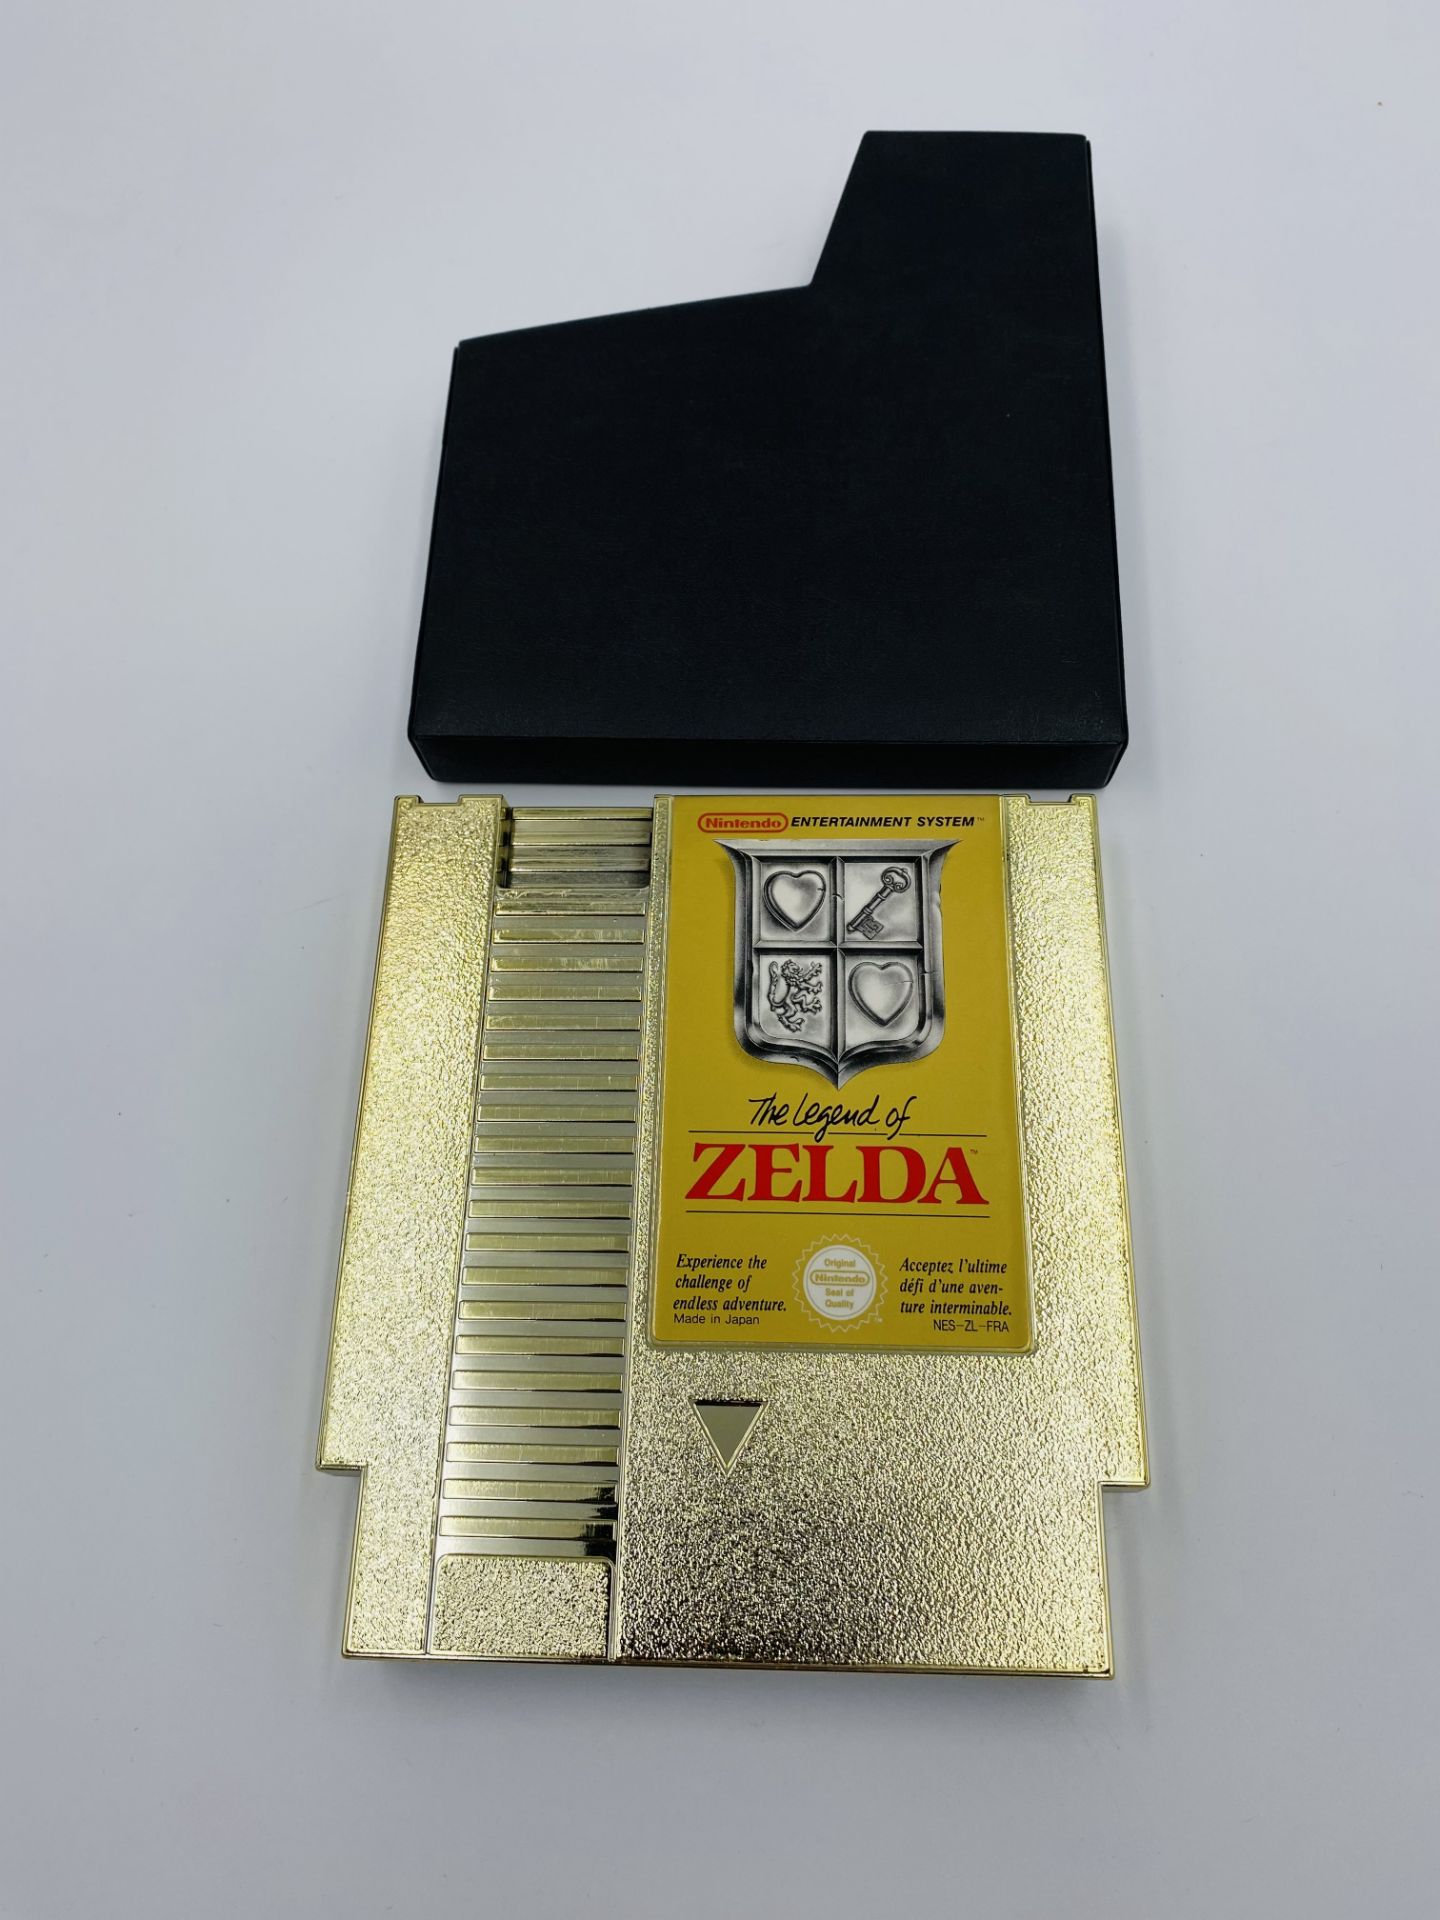 Nintendo NES cartridge The Legend of Zelda - Image 2 of 2